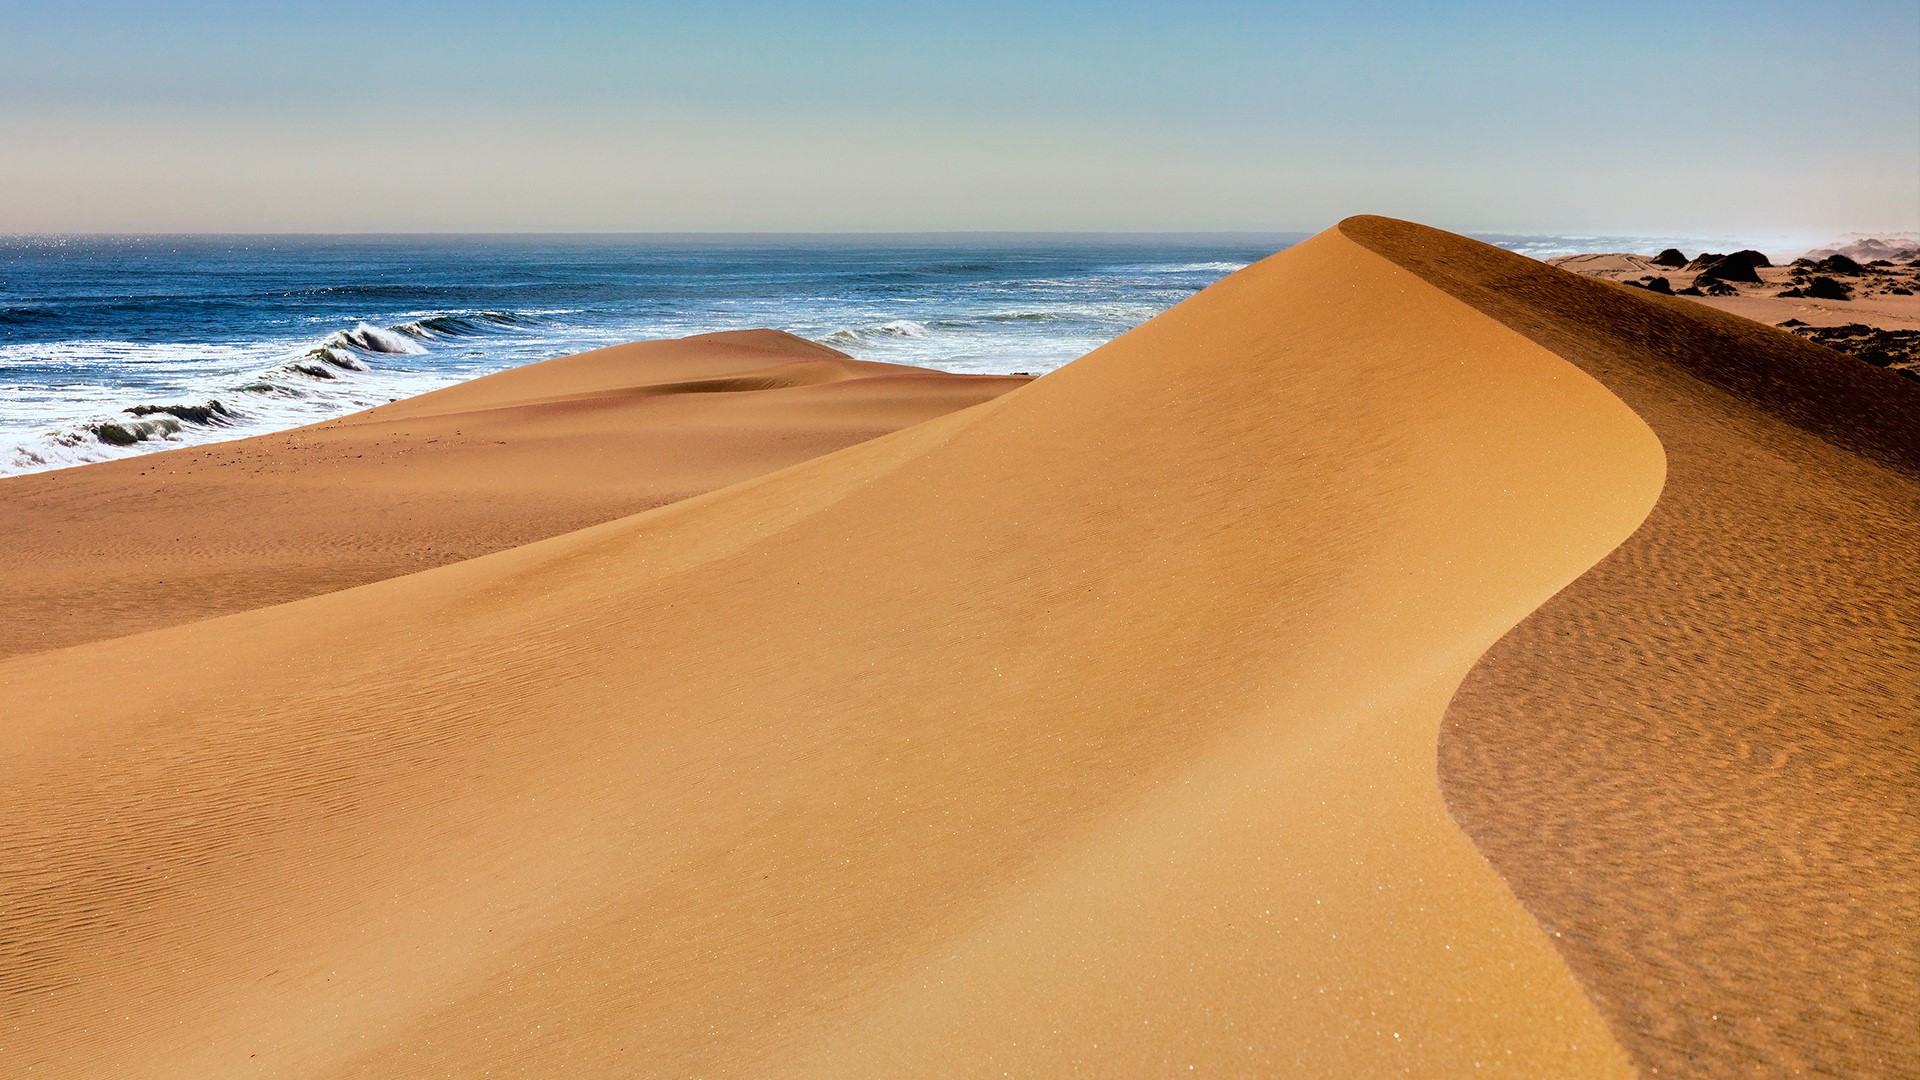 Namibia desert beach sand dune in Sandwich Harbour | Windows Spotlight ...